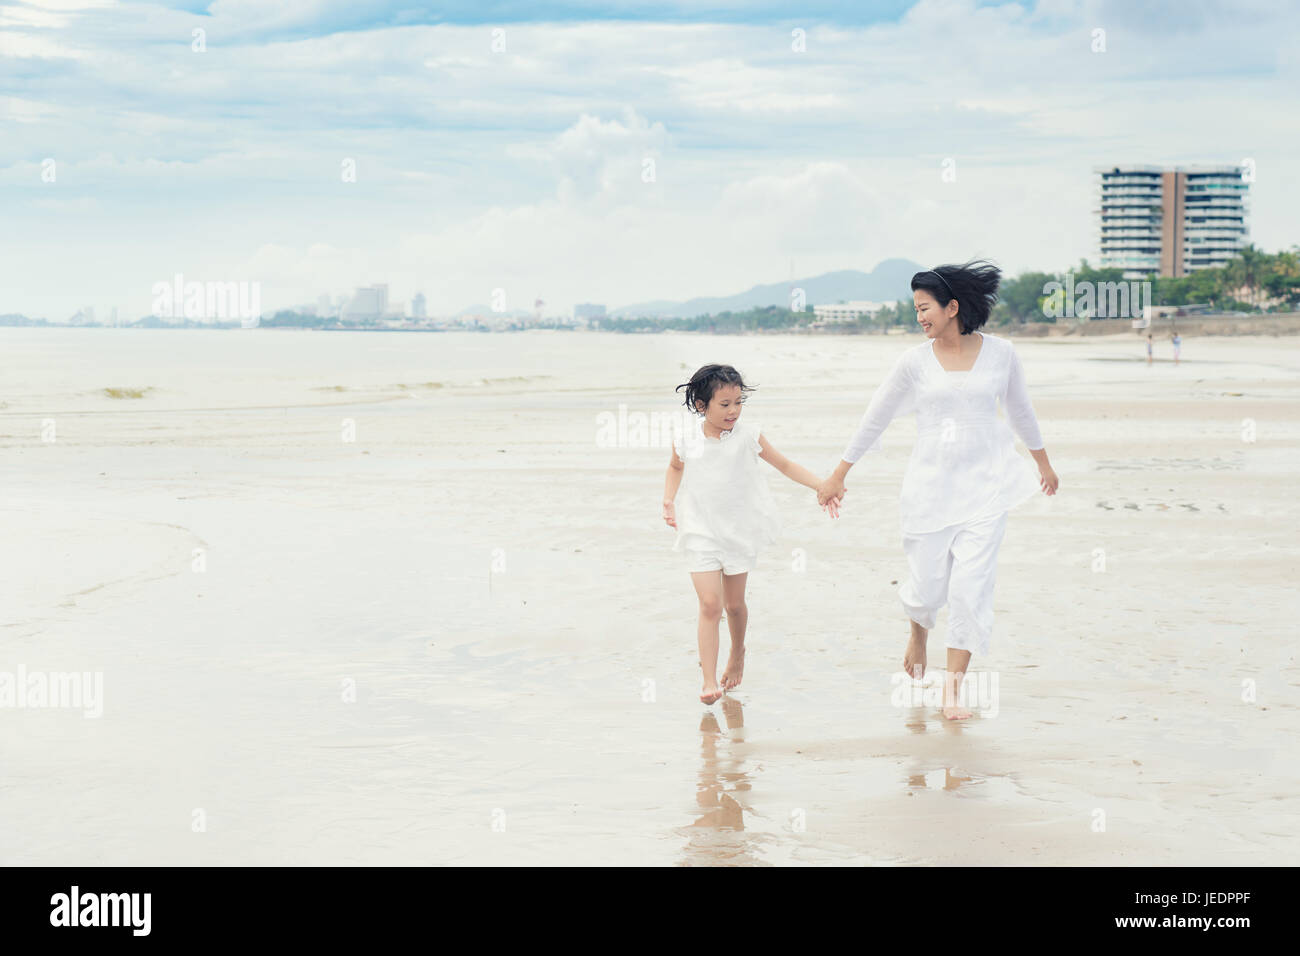 Glückliche asiatischen Familie Mutter und Kind Tochter laufen, lachen und spielen am Strand. Glückliche Familien-Sommer-Urlaub-Konzept. Stockfoto